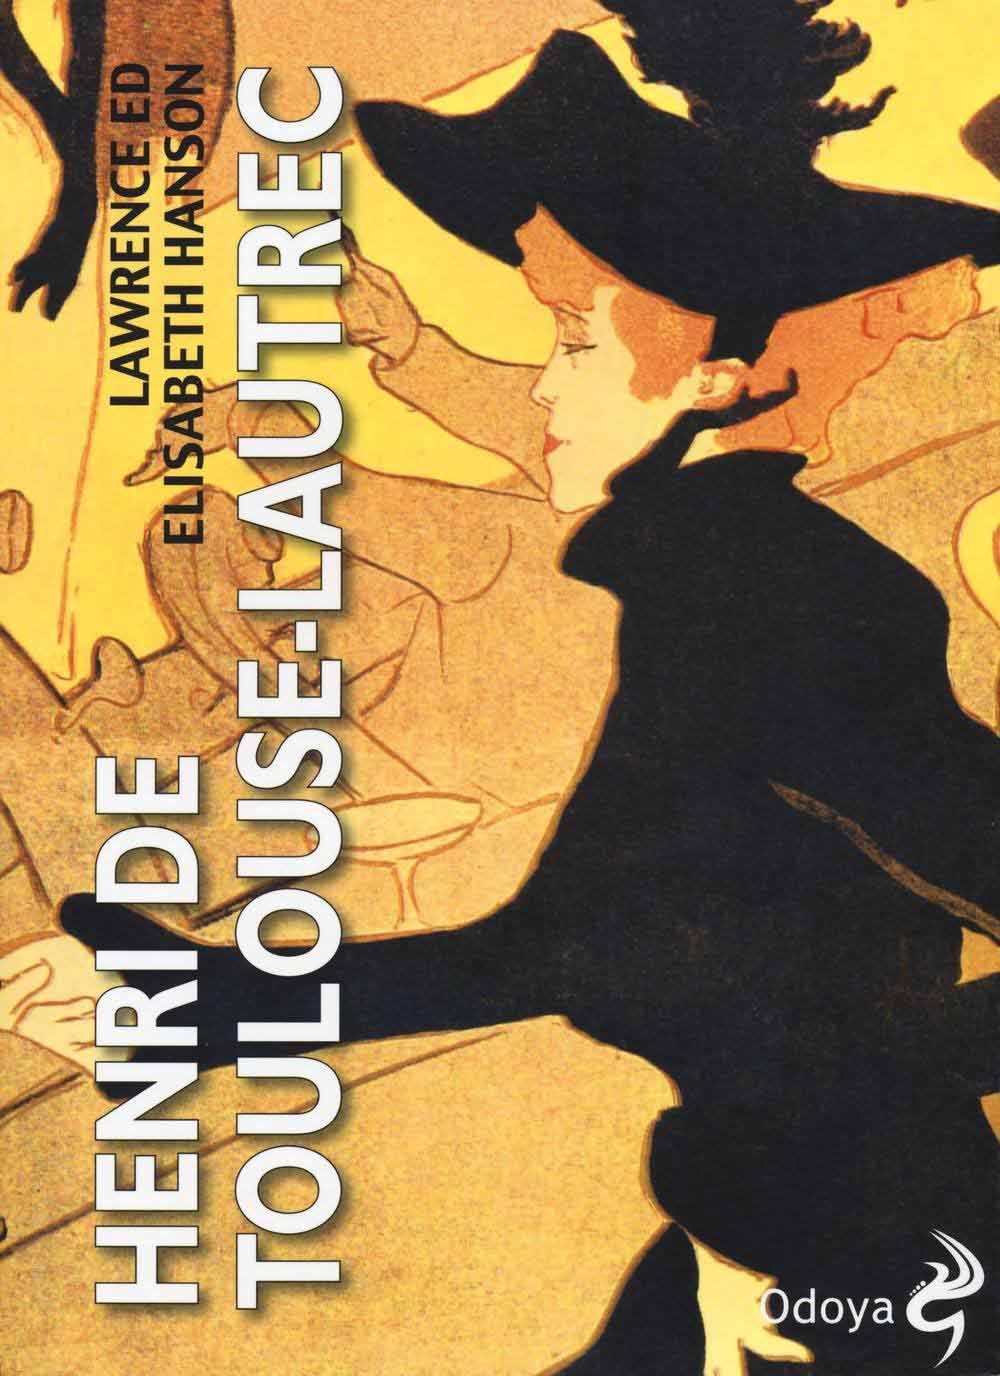 Libri Lawrence Hanson / Elisabeth Hanson - Henri De Toulouse-Lautrec NUOVO SIGILLATO, EDIZIONE DEL 17/03/2016 SUBITO DISPONIBILE